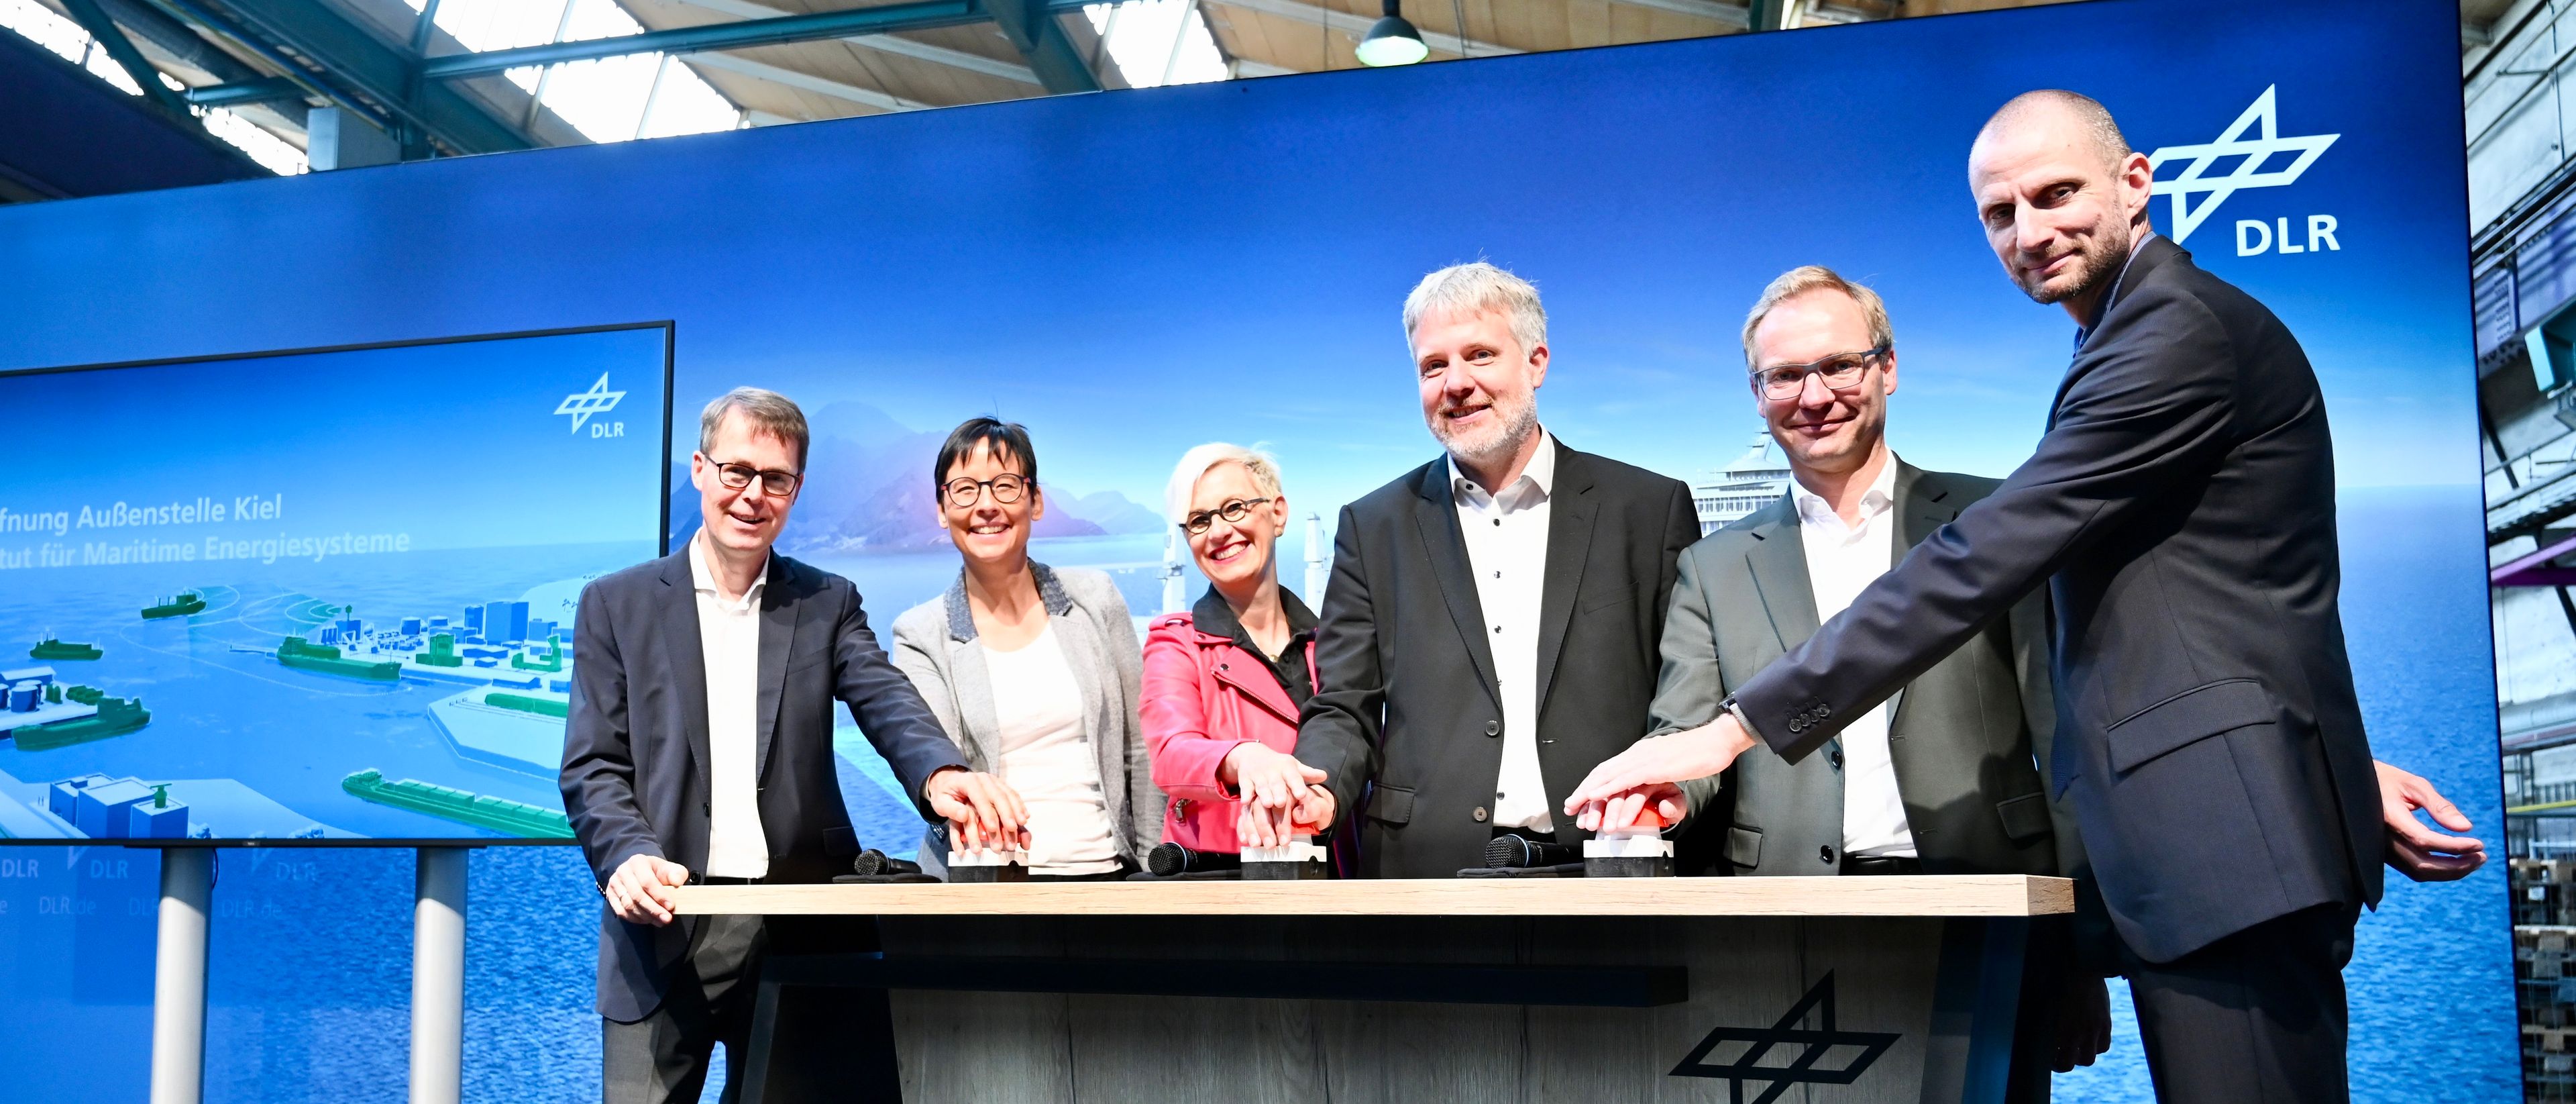 DLR-Forschung zu klimaverträglicher Schifffahrt kommt nach Kiel